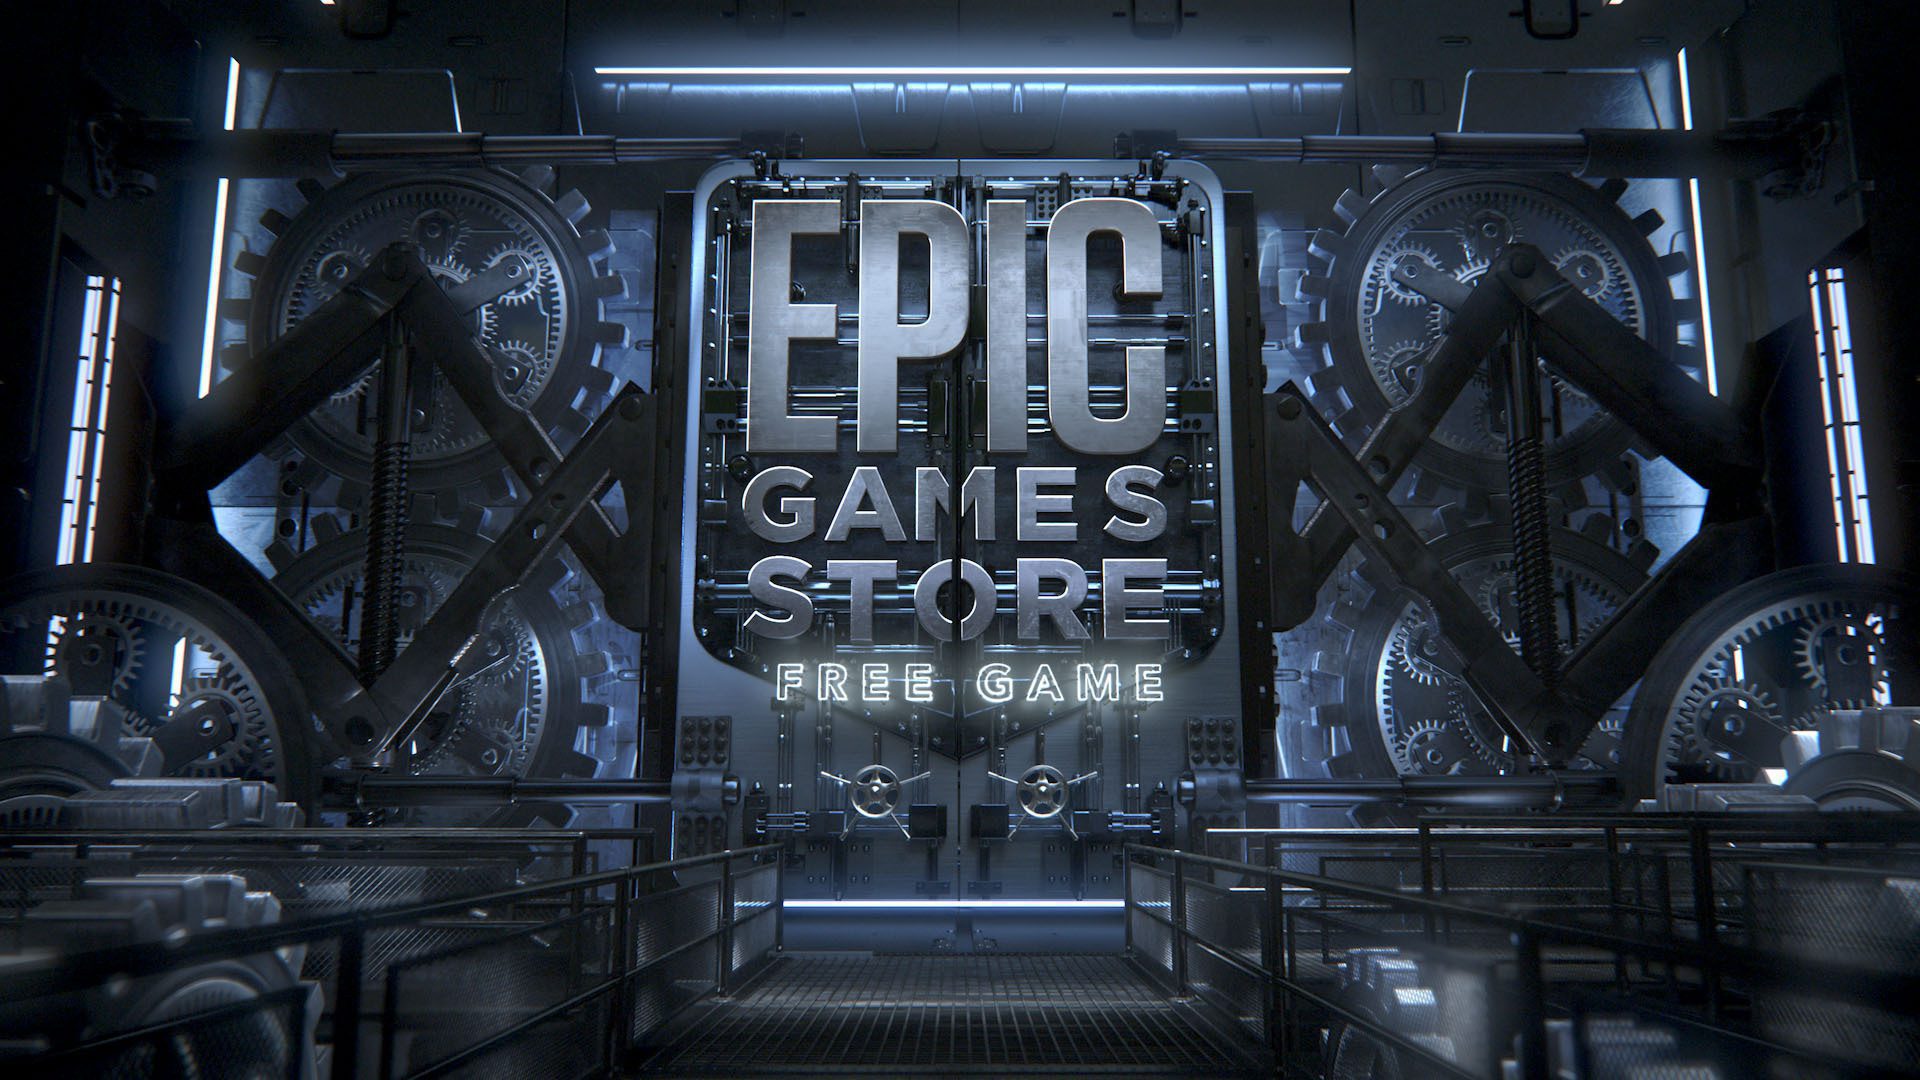 Há 5 anos no mercado, a Epic Games Store ainda não dá lucro